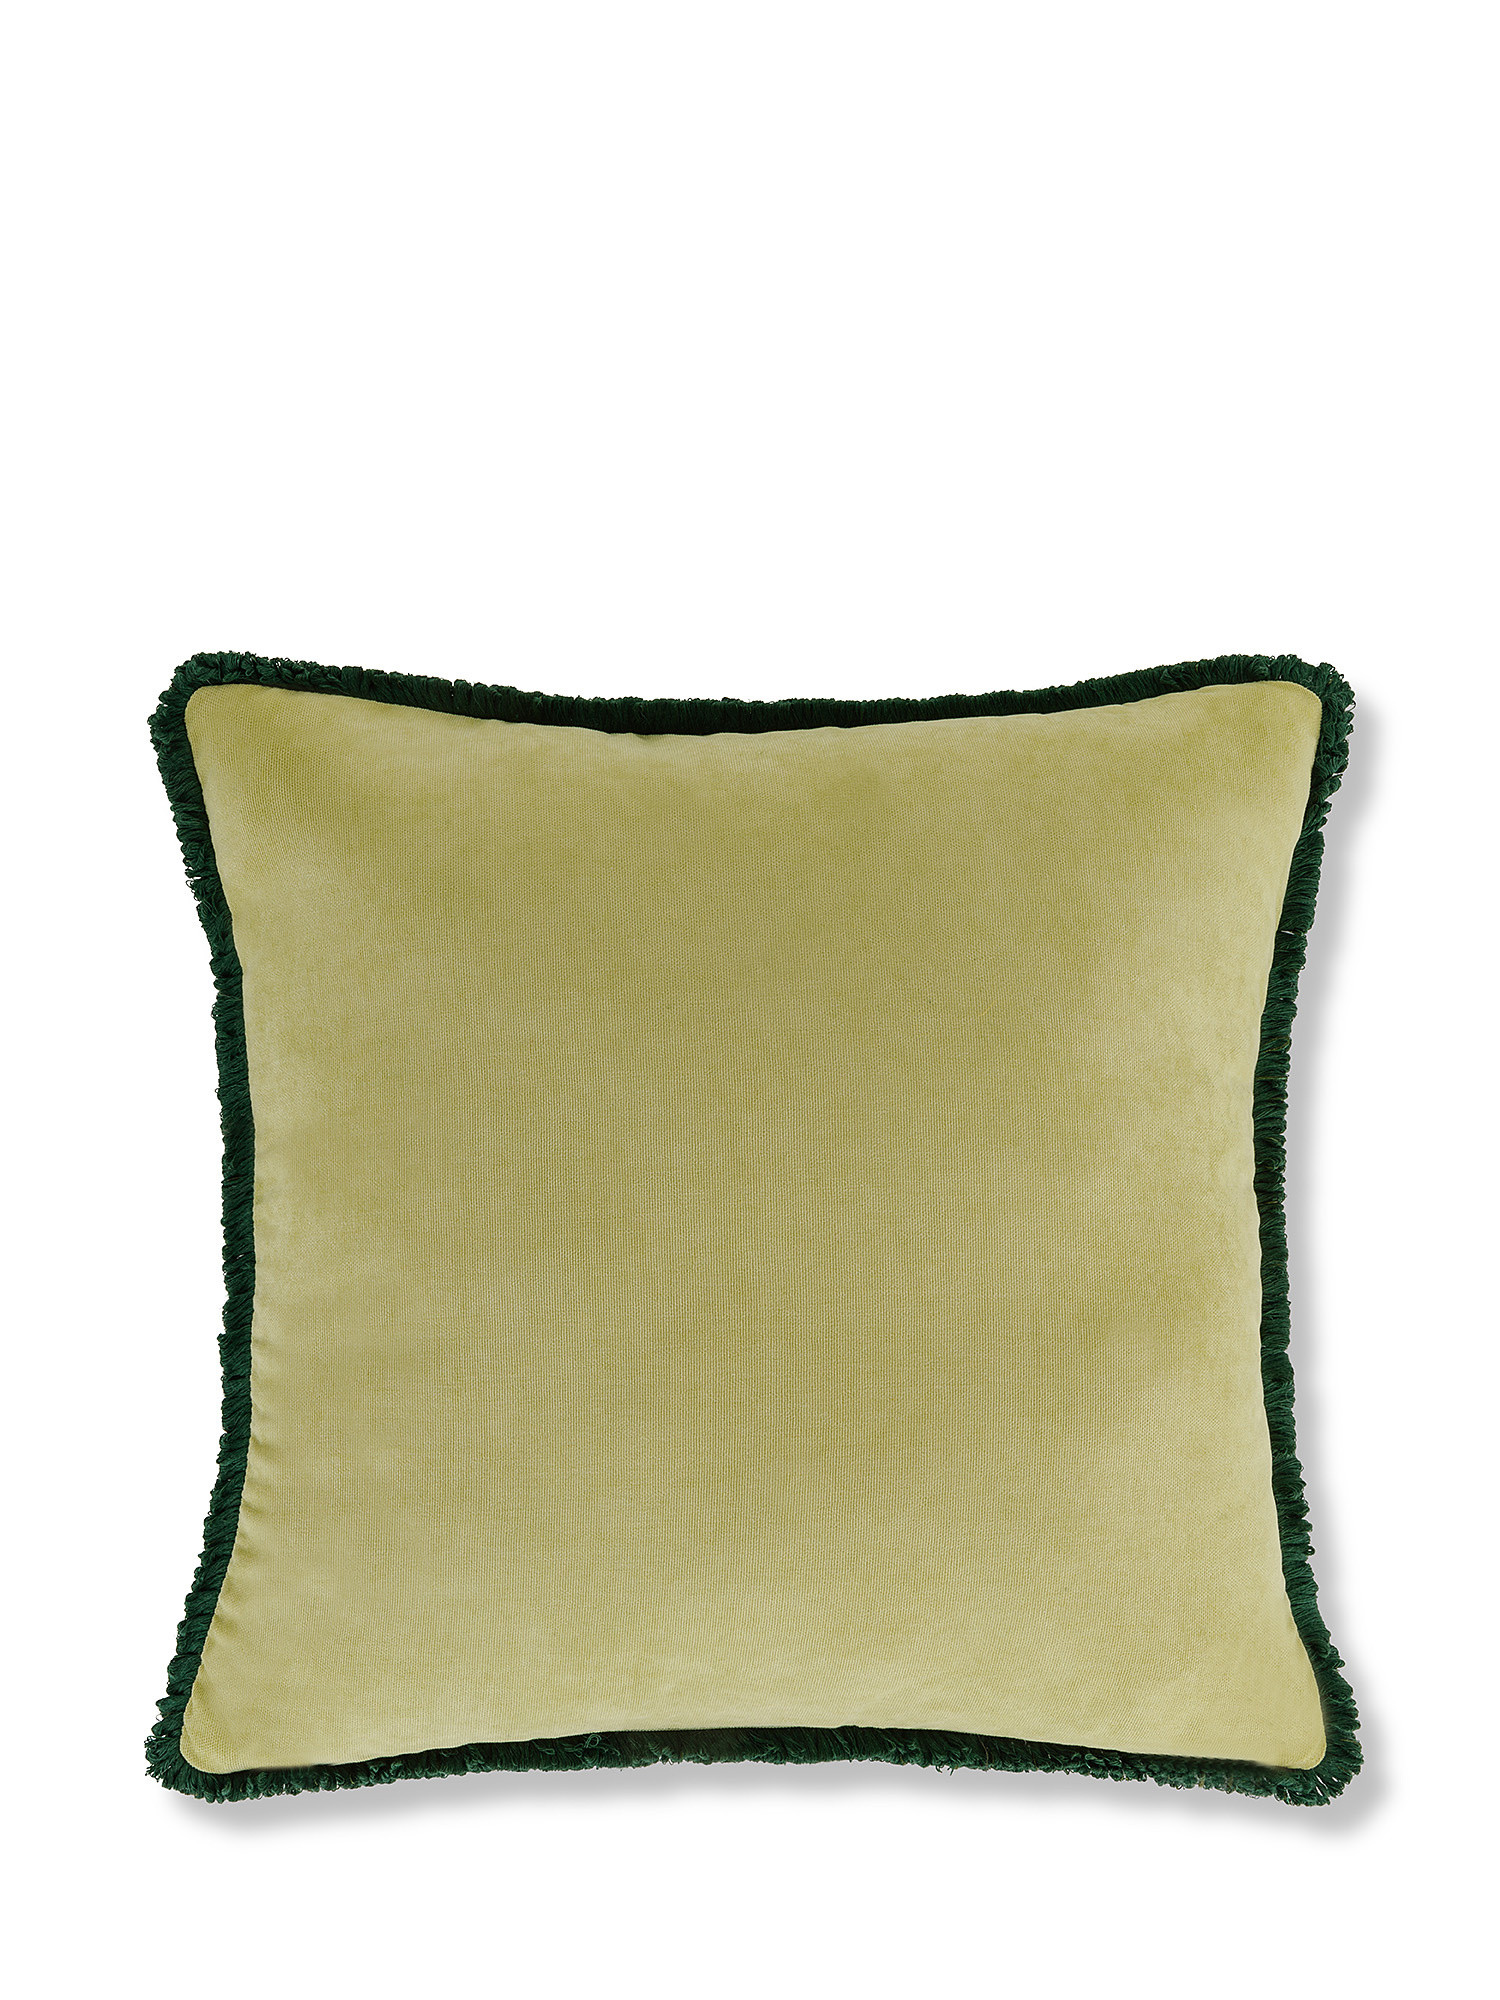 Cuscino stampa fiorellini 45x45cm, Verde, large image number 2